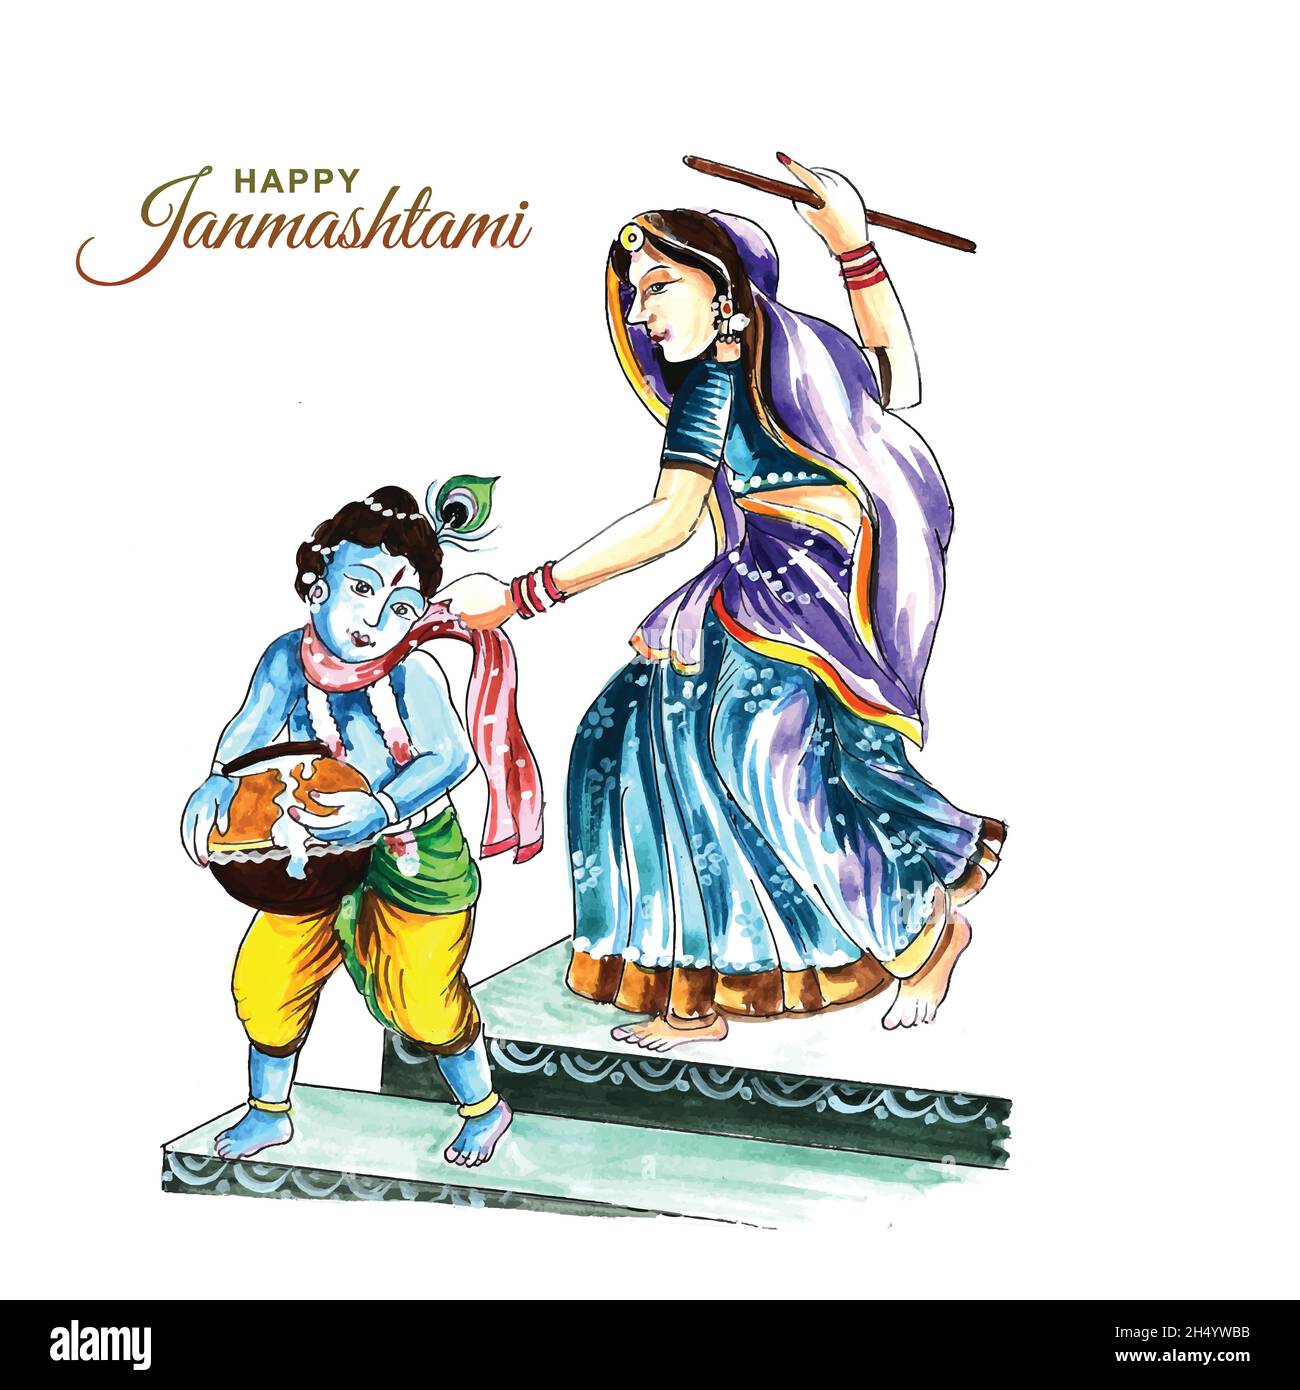 Indian hindu festival of janmashtami celebration card background Stock Vector